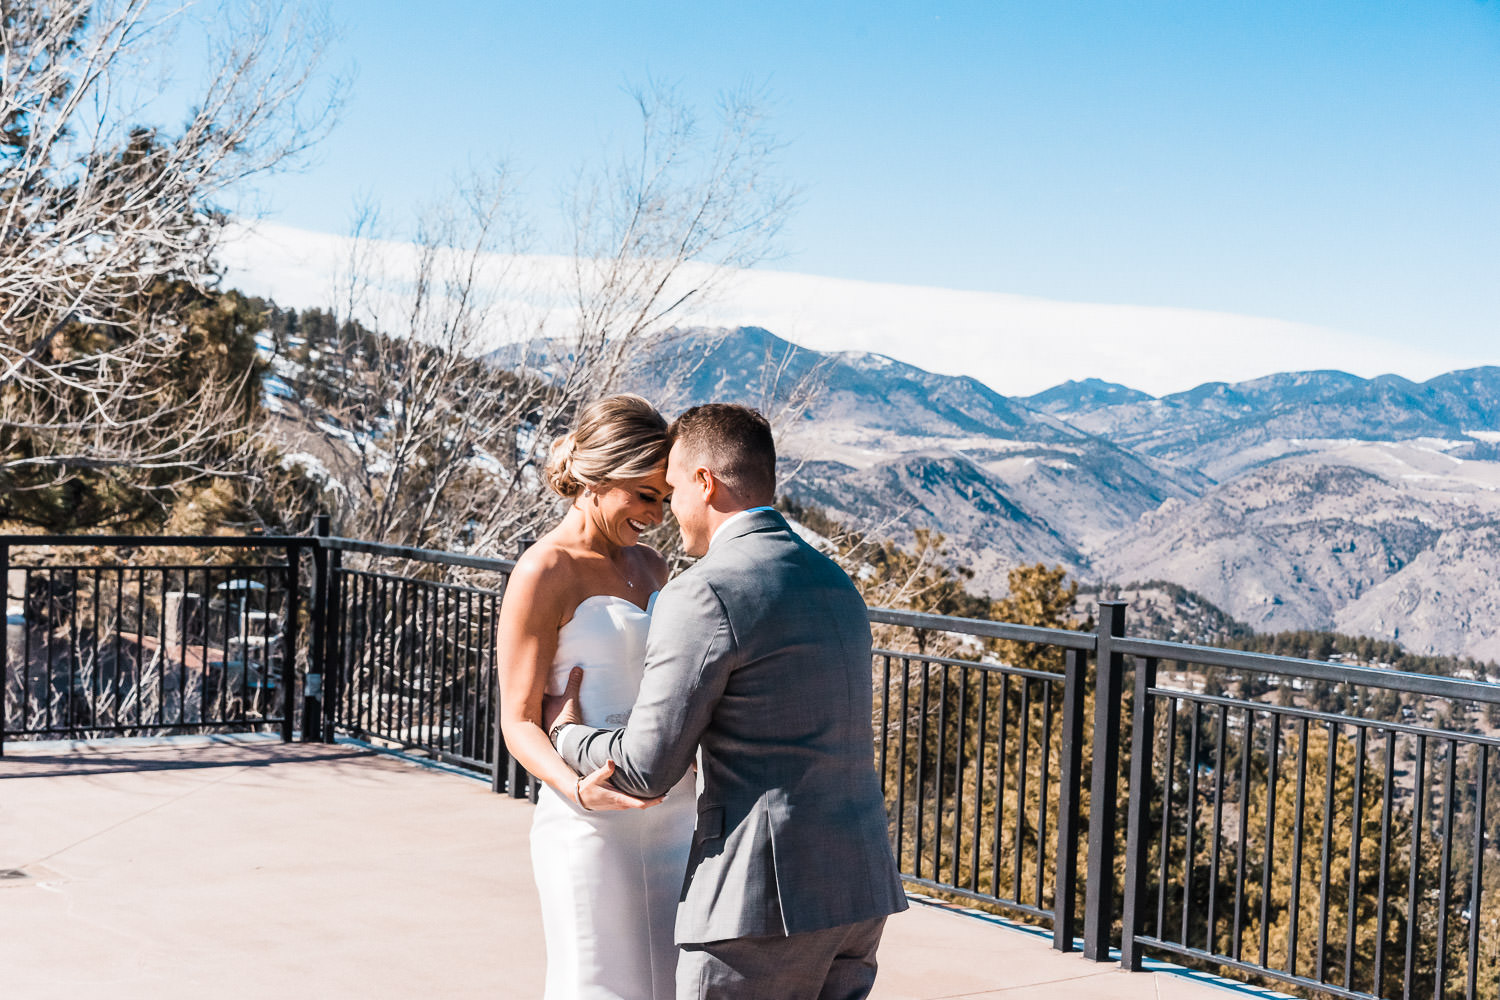 Mount Vernon Canyon Club Wedding, Colorado Wedding